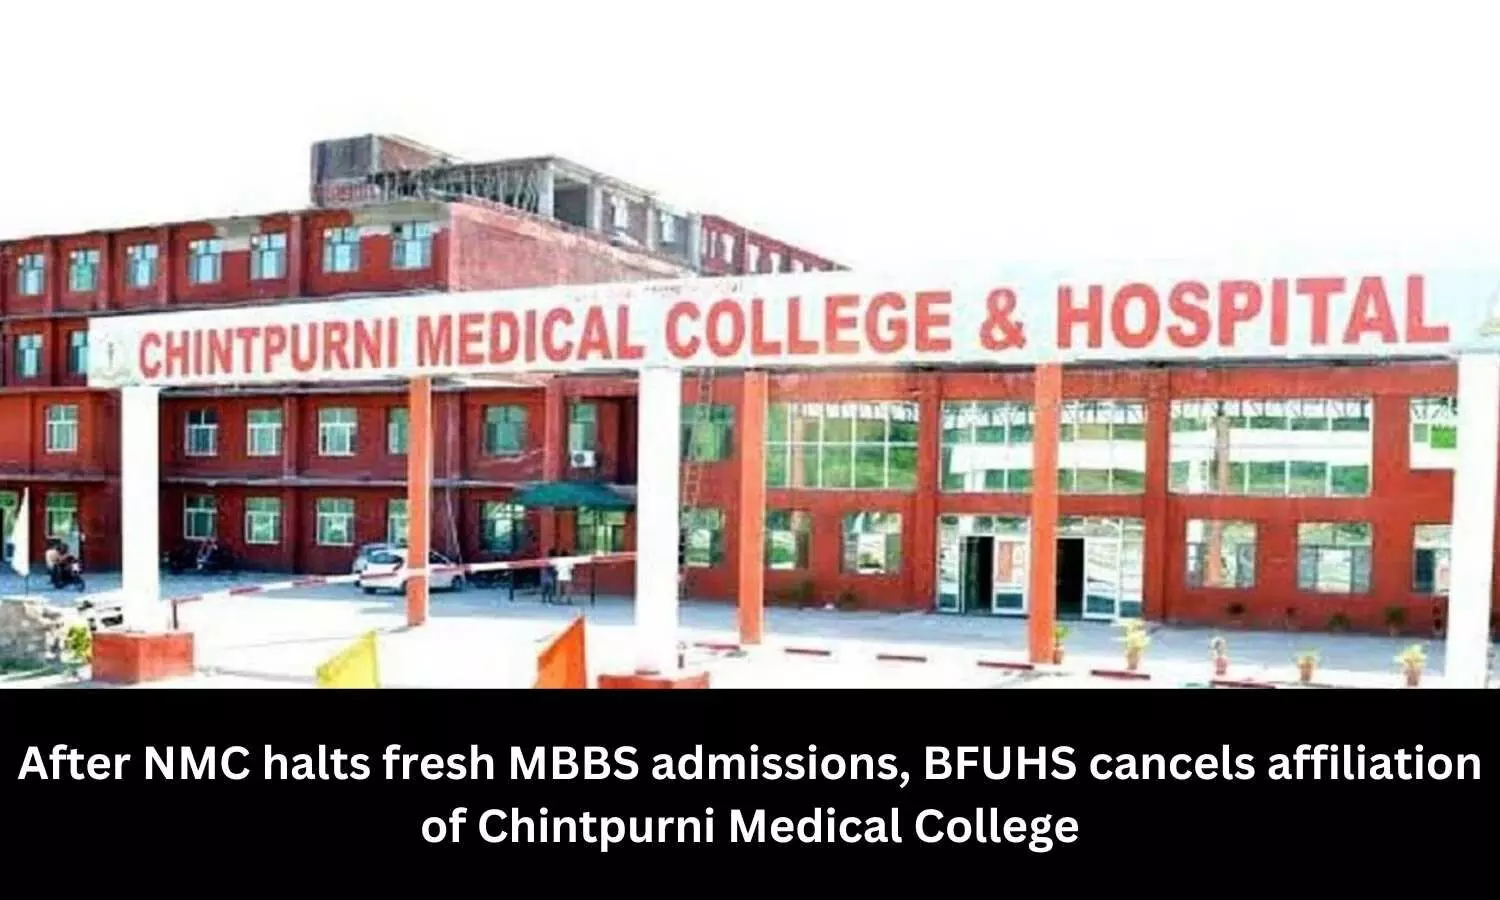 BFUHS cancels affiliation of Chintpurni Medical College